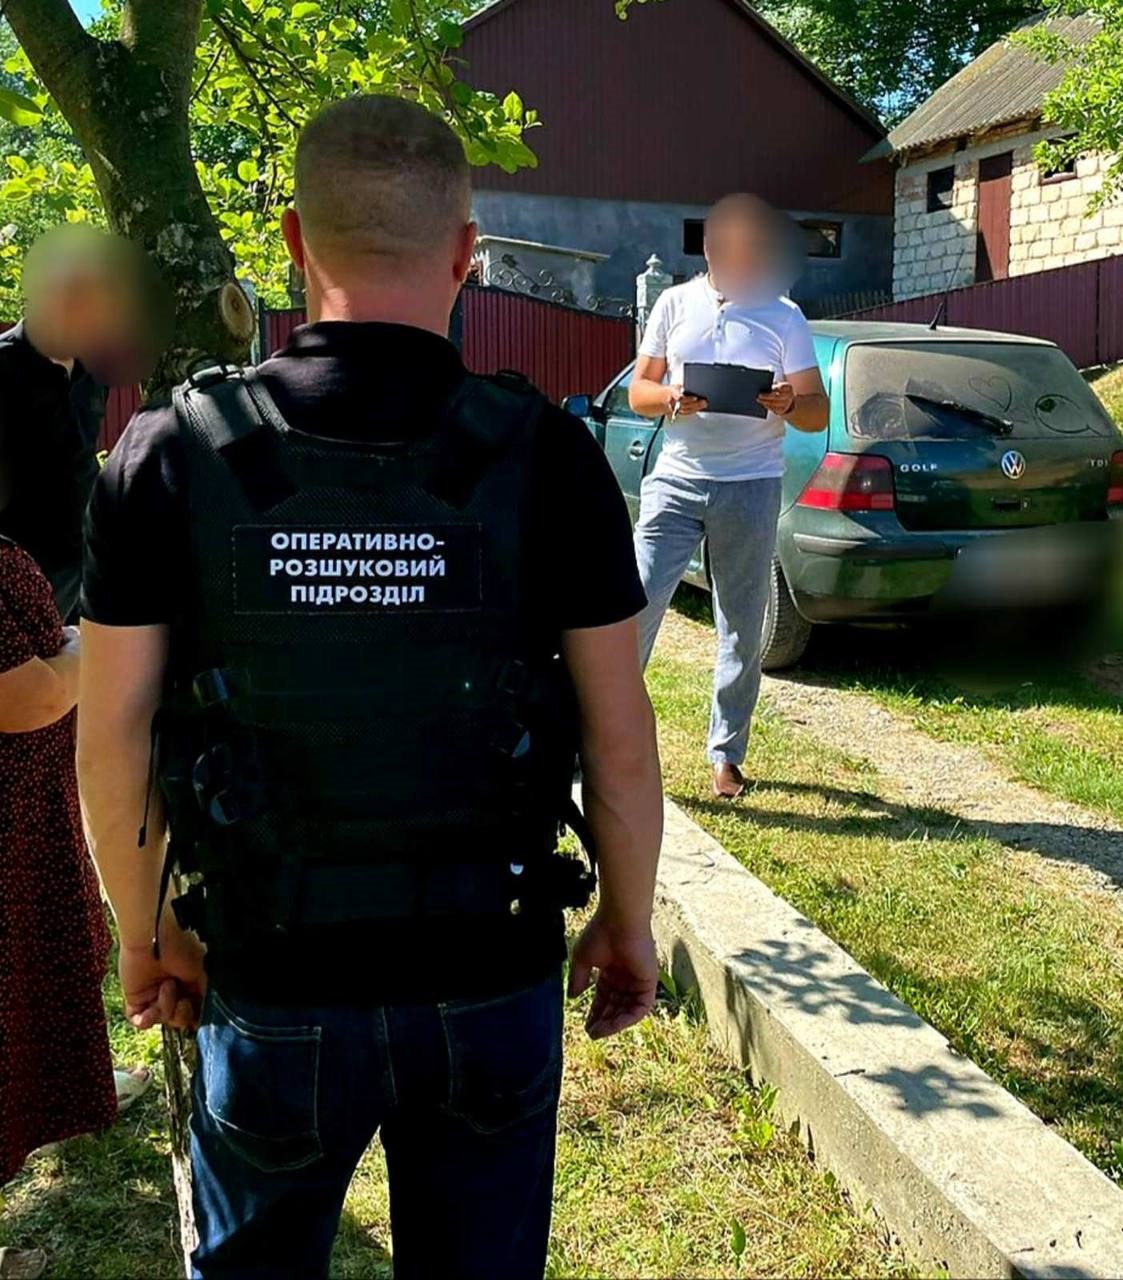 За 1500 євро організував односельцю незаконний перетин кордону – повідомлено про підозру жителю Чернівецького району